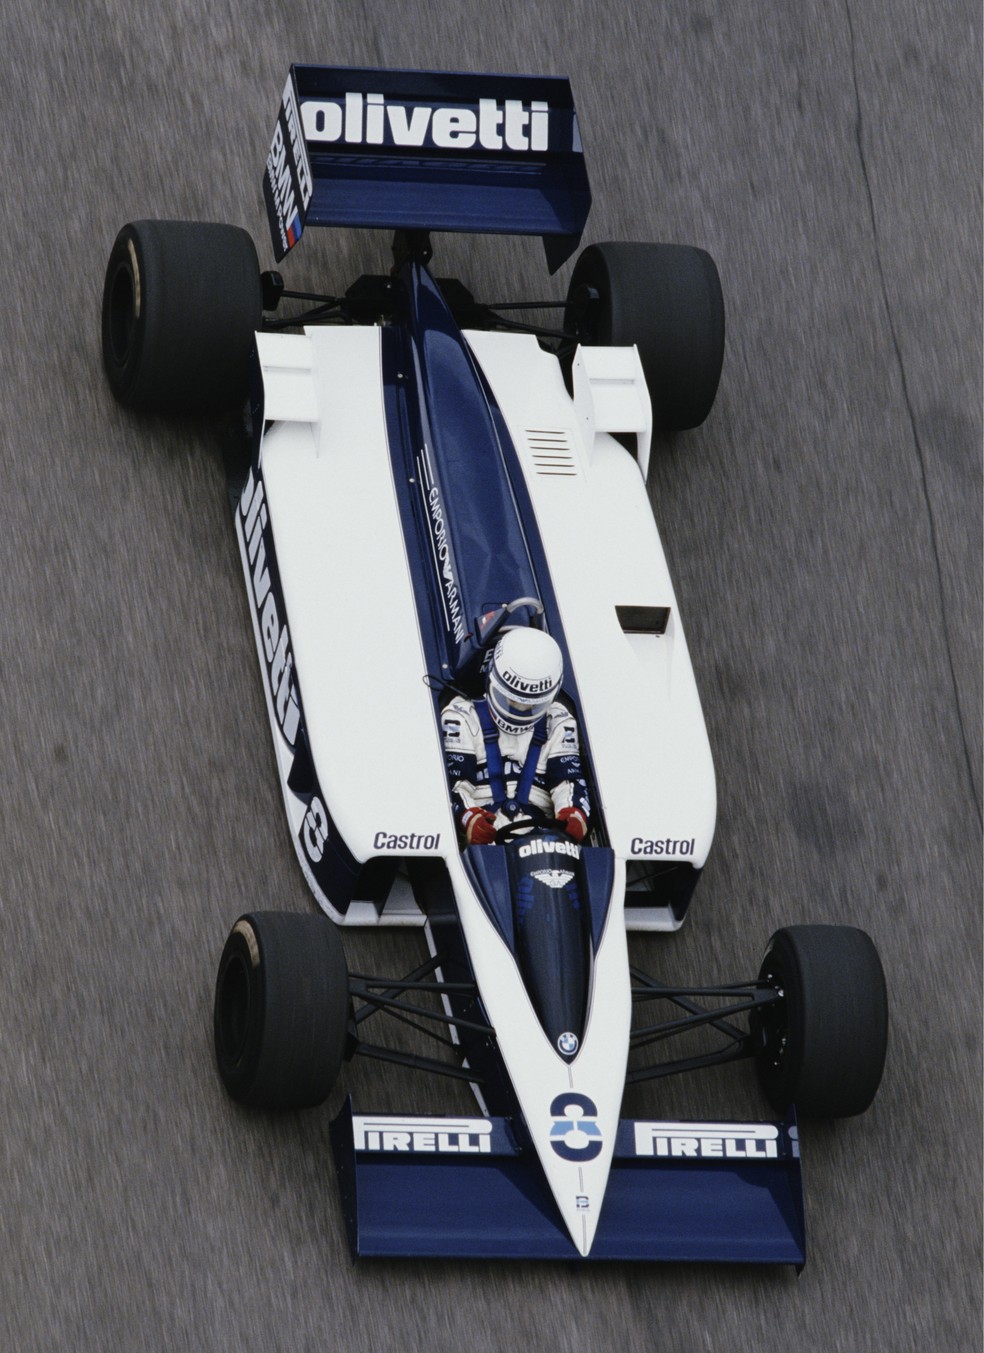 Brabham skate passou de revolucionário a fracassado na temporada